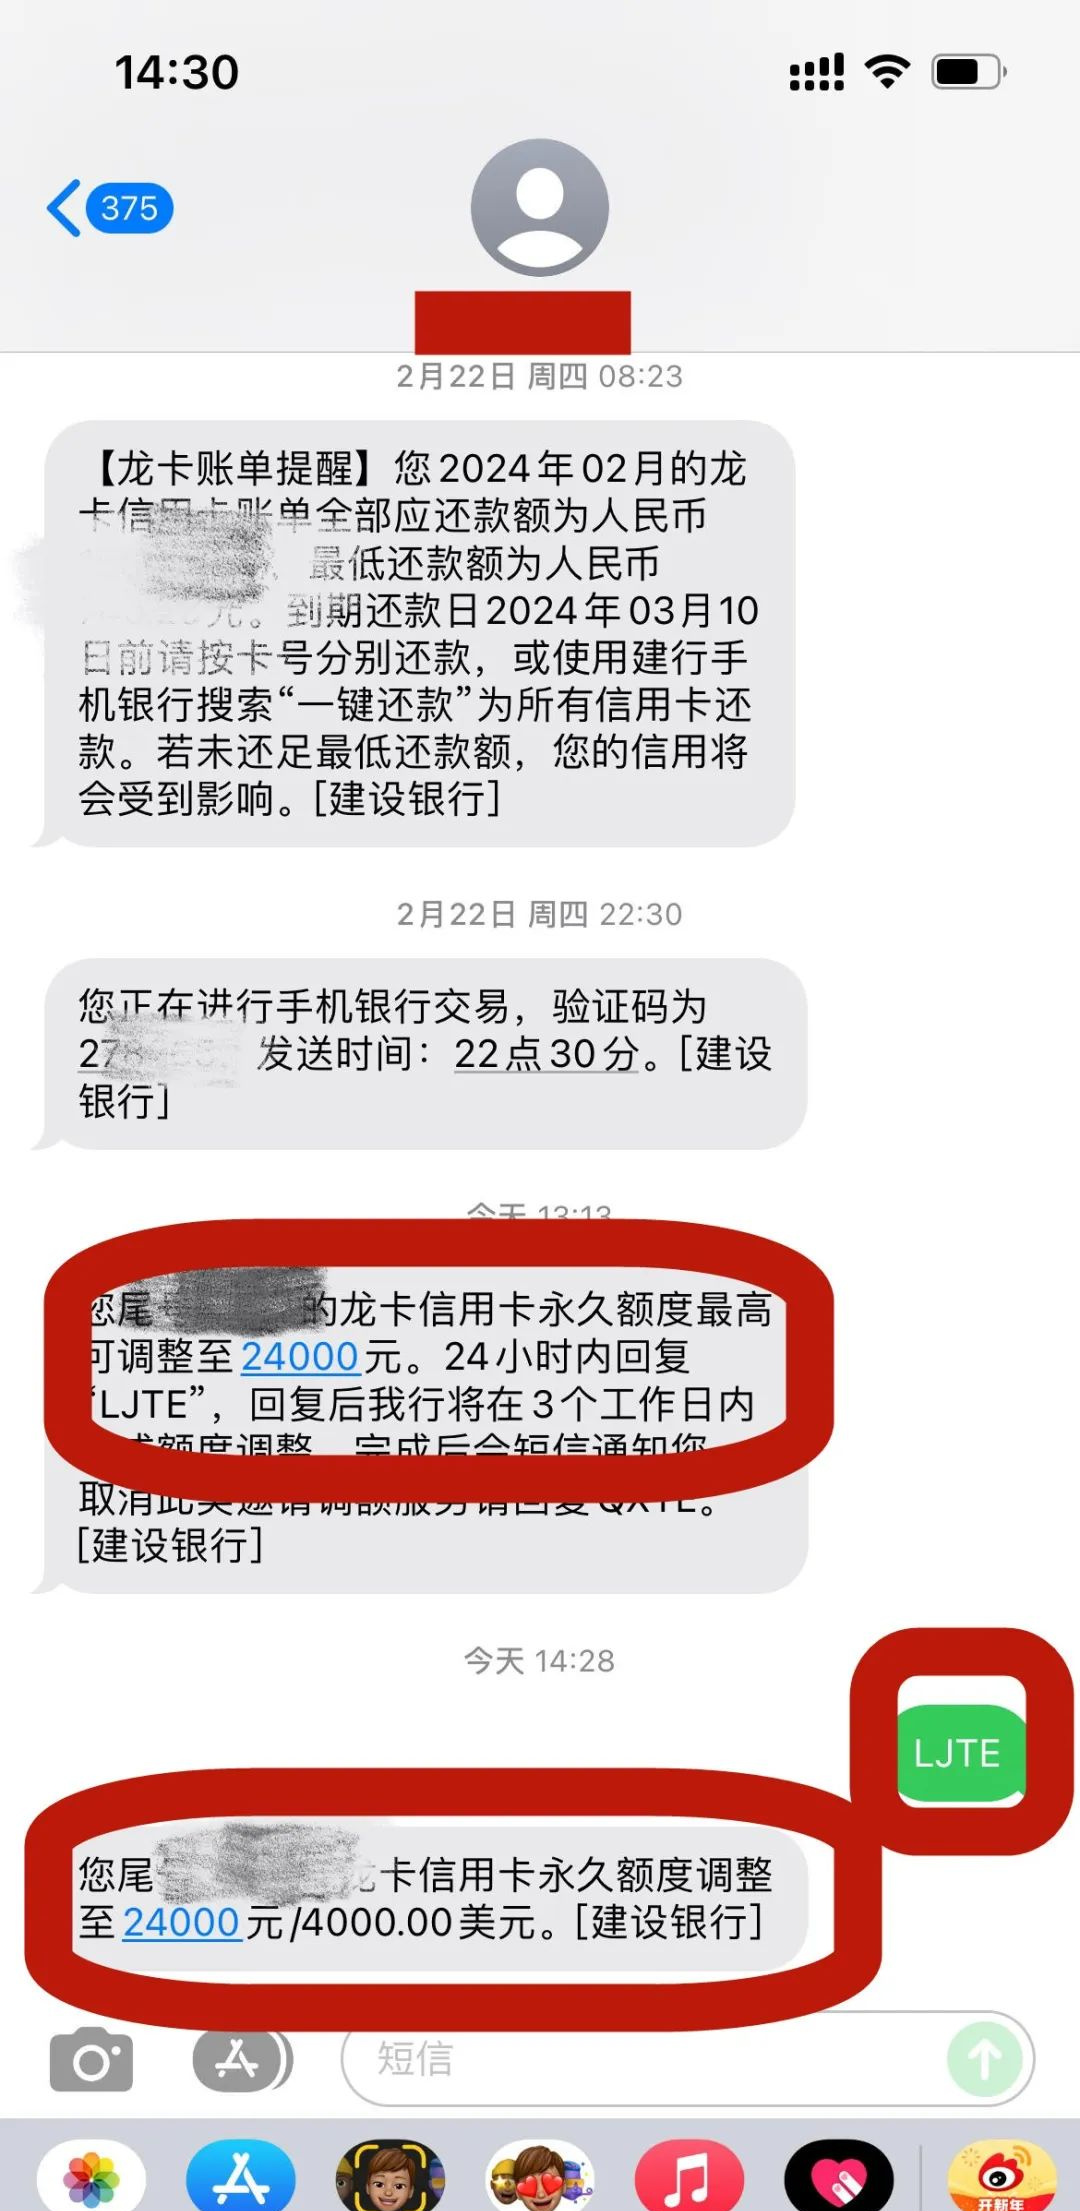 中国银行转账成功短信图片